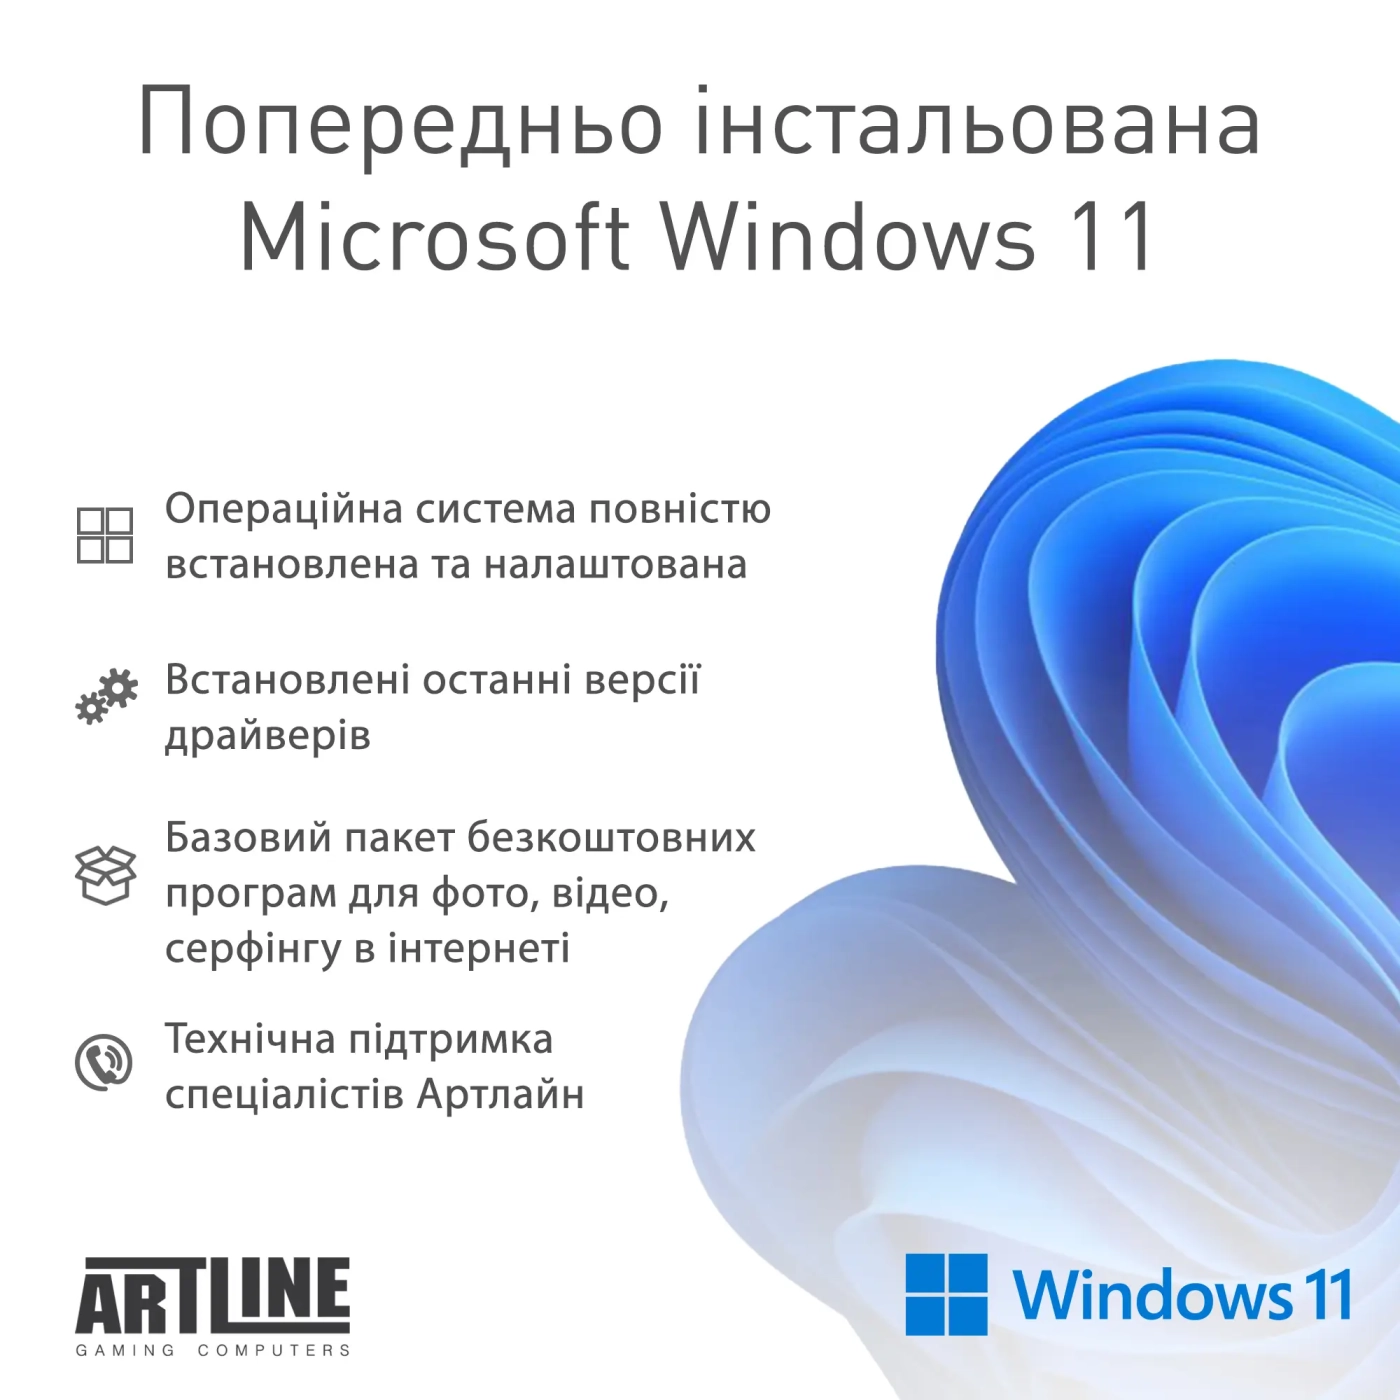 Купить Компьютер ARTLINE Gaming D31 Windows 11 Home (D31v02Win) - фото 12